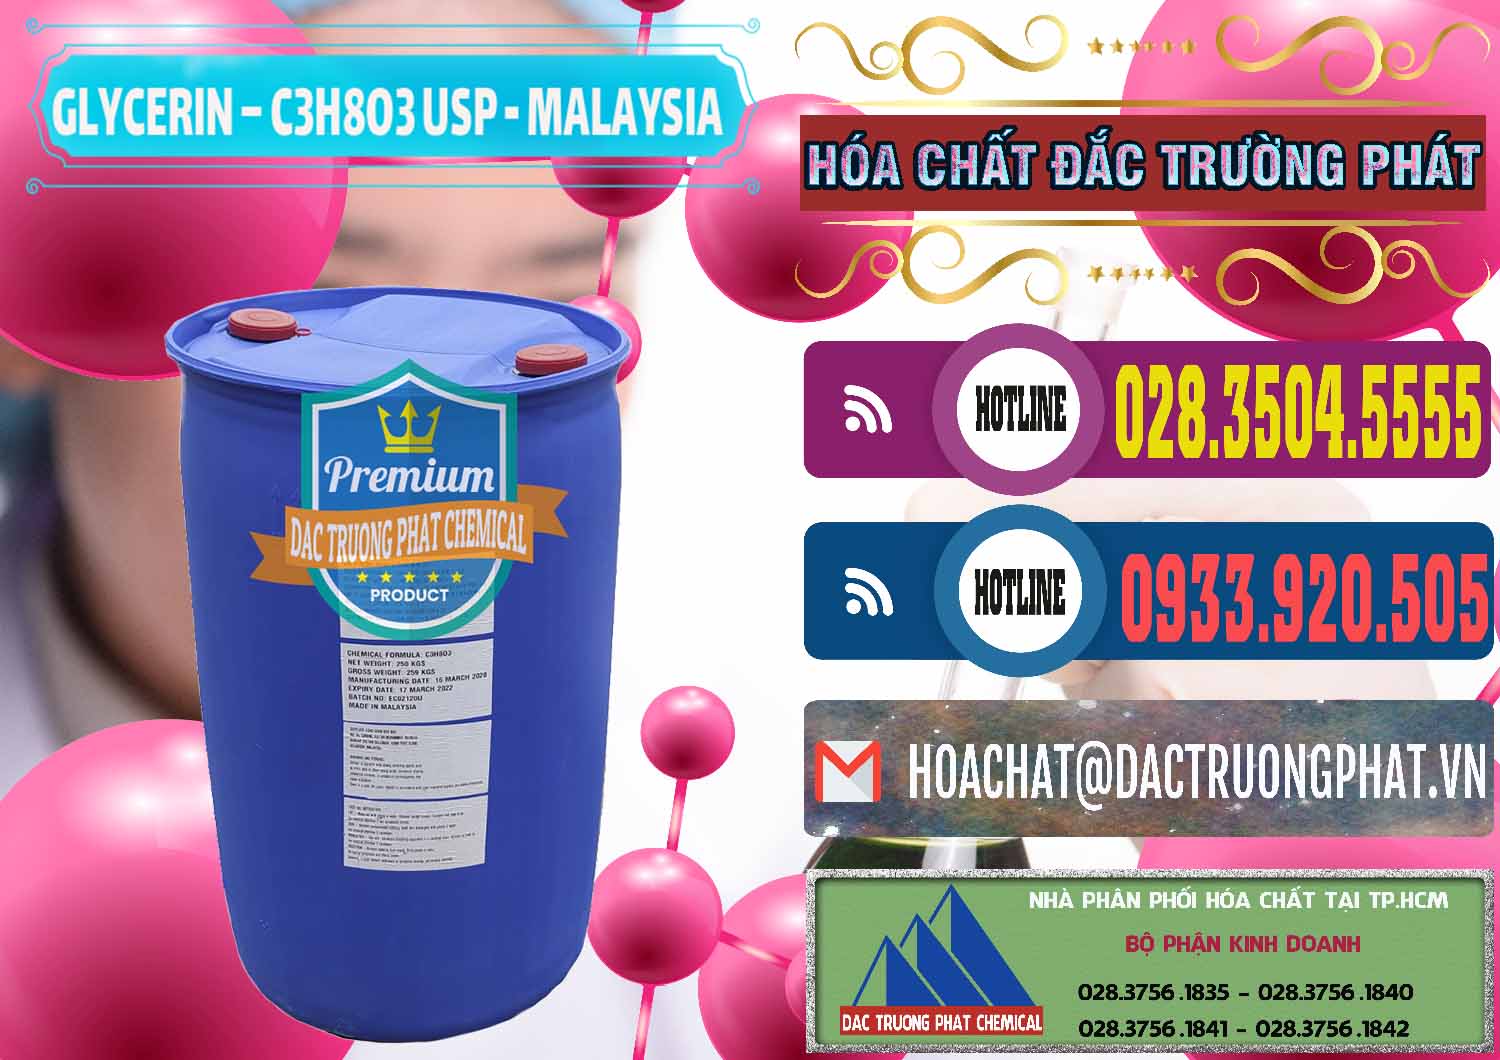 Cty cung ứng & bán Glycerin – C3H8O3 USP Malaysia - 0233 - Nhà phân phối và cung ứng hóa chất tại TP.HCM - muabanhoachat.com.vn